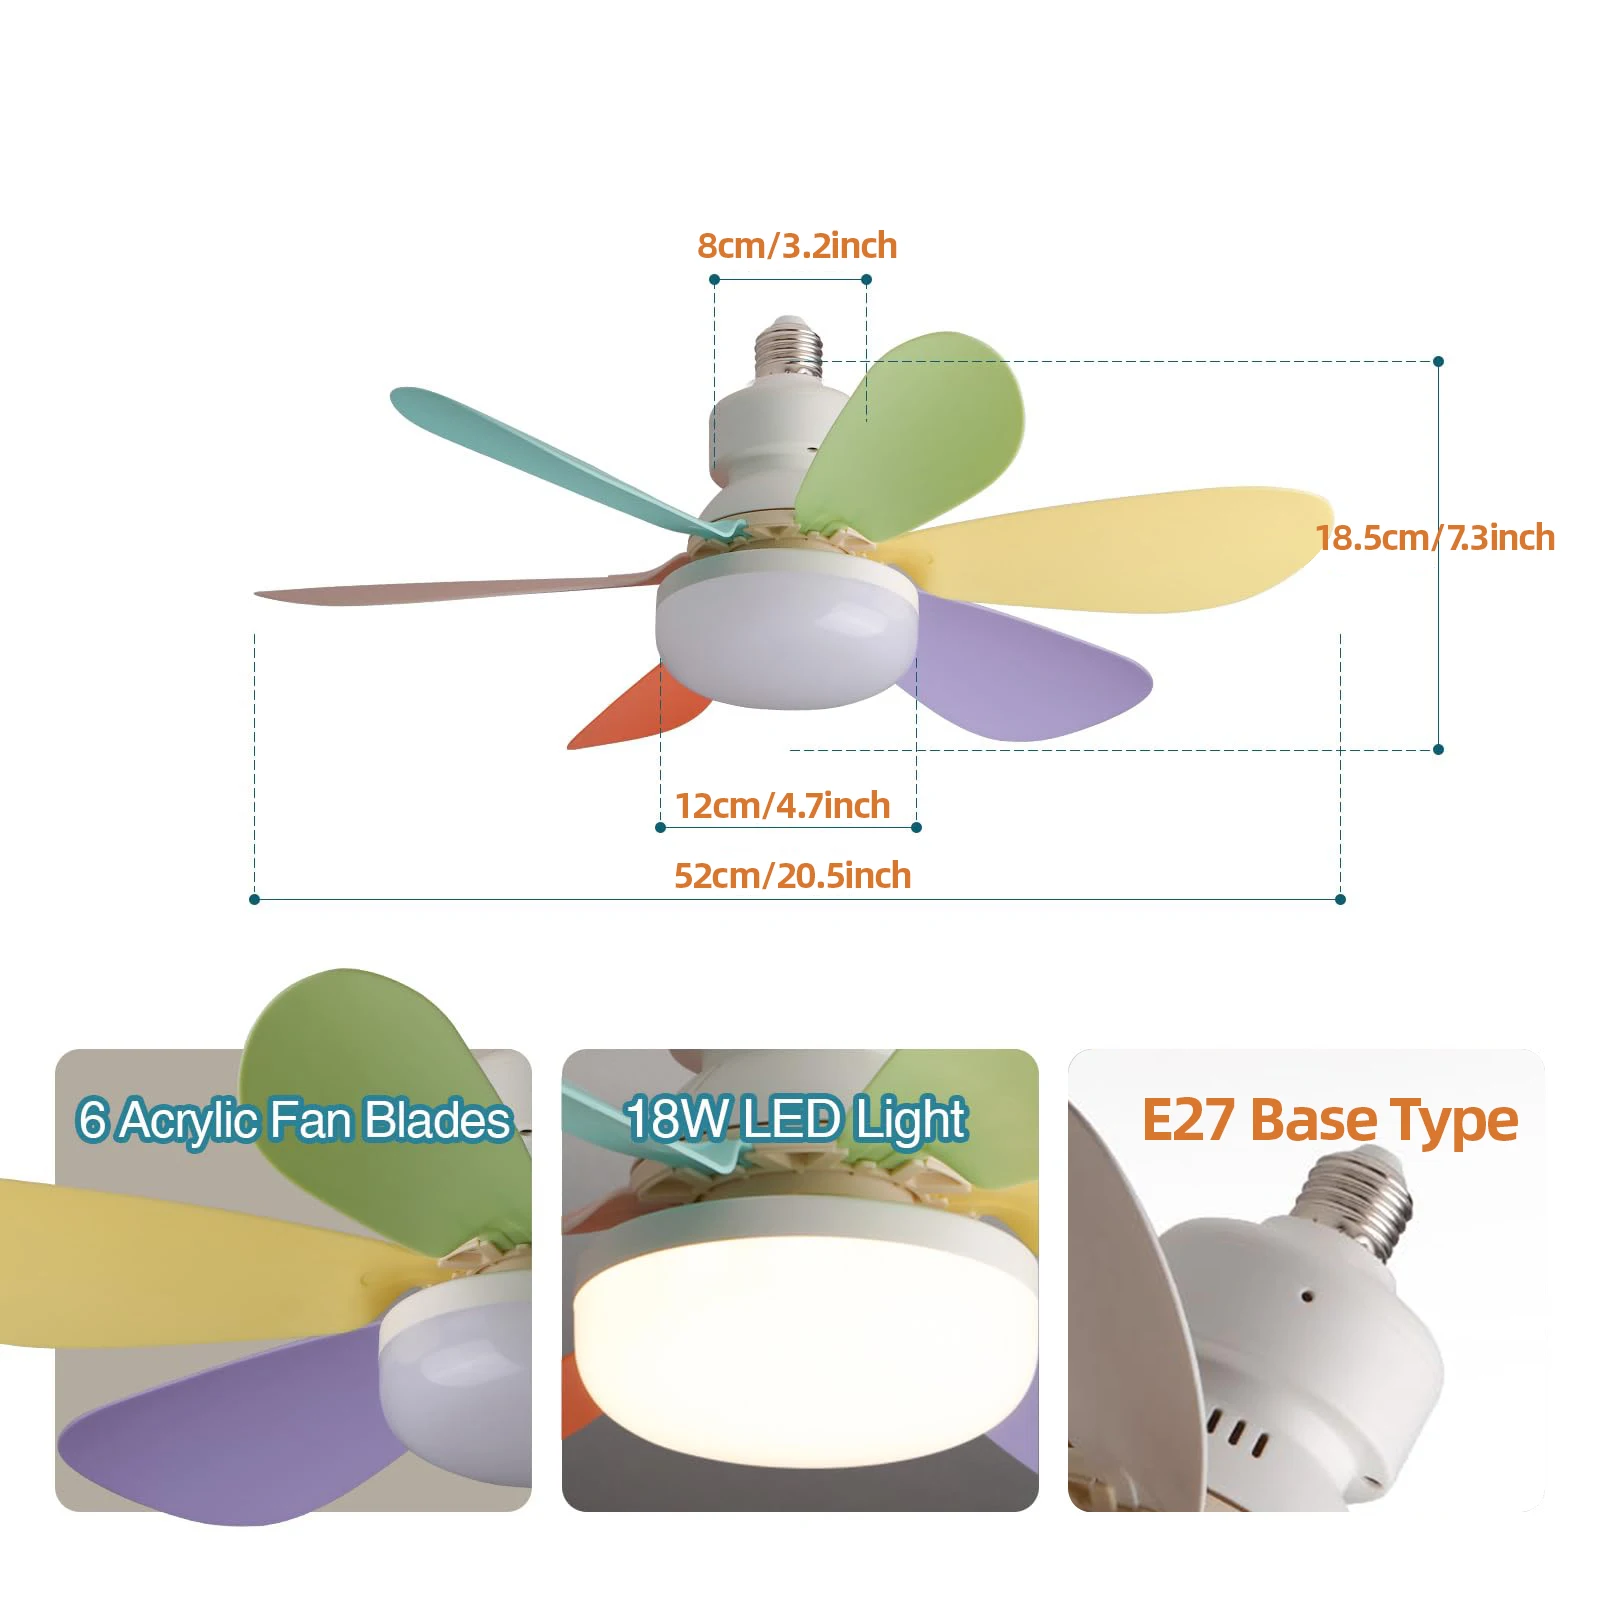 מאוורר תקרה אוניברסלי מתברג לכל בית מנורה רגיל עם נורת LED ושלט לשינוי גוון ומטפרטורת האור